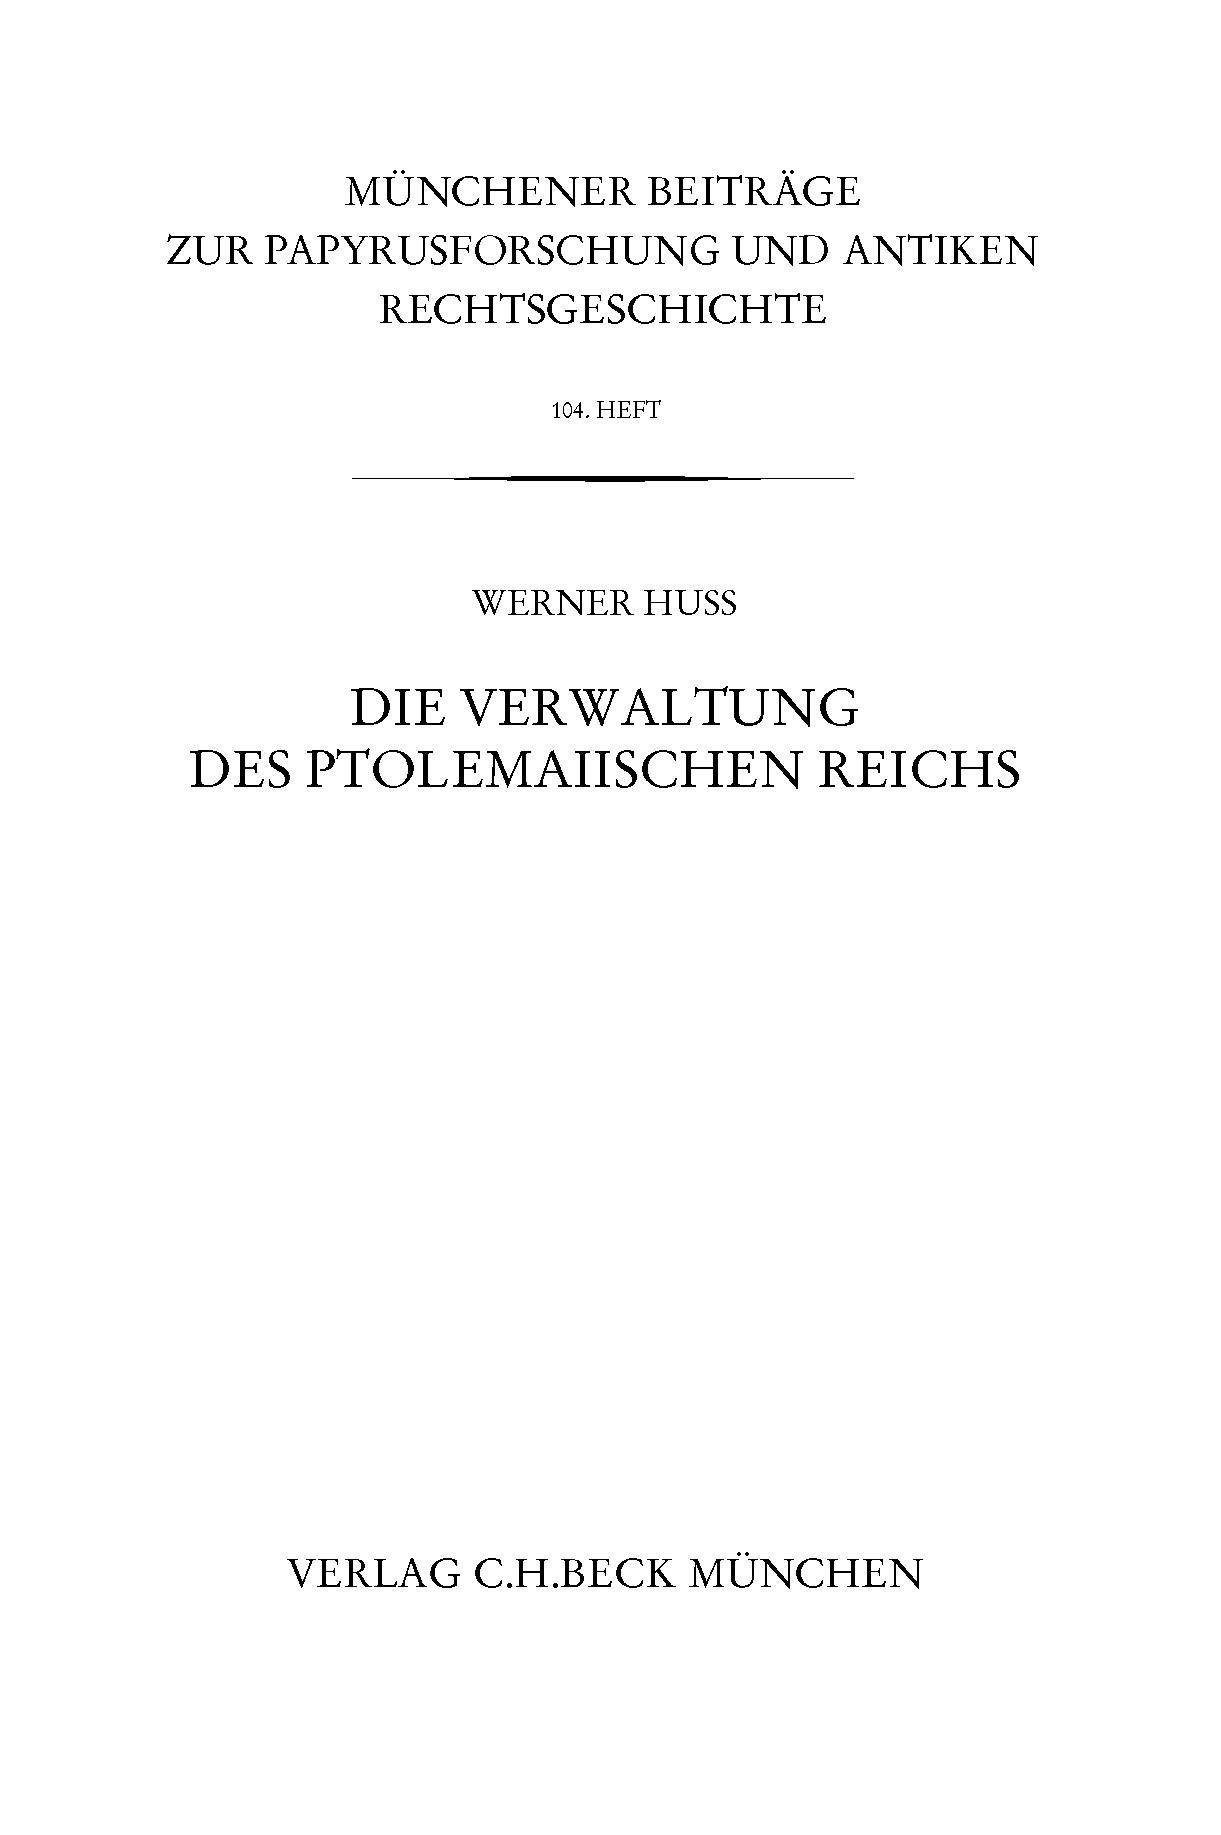 Cover: Huß, Werner, Münchener Beiträge zur Papyrusforschung Heft 104